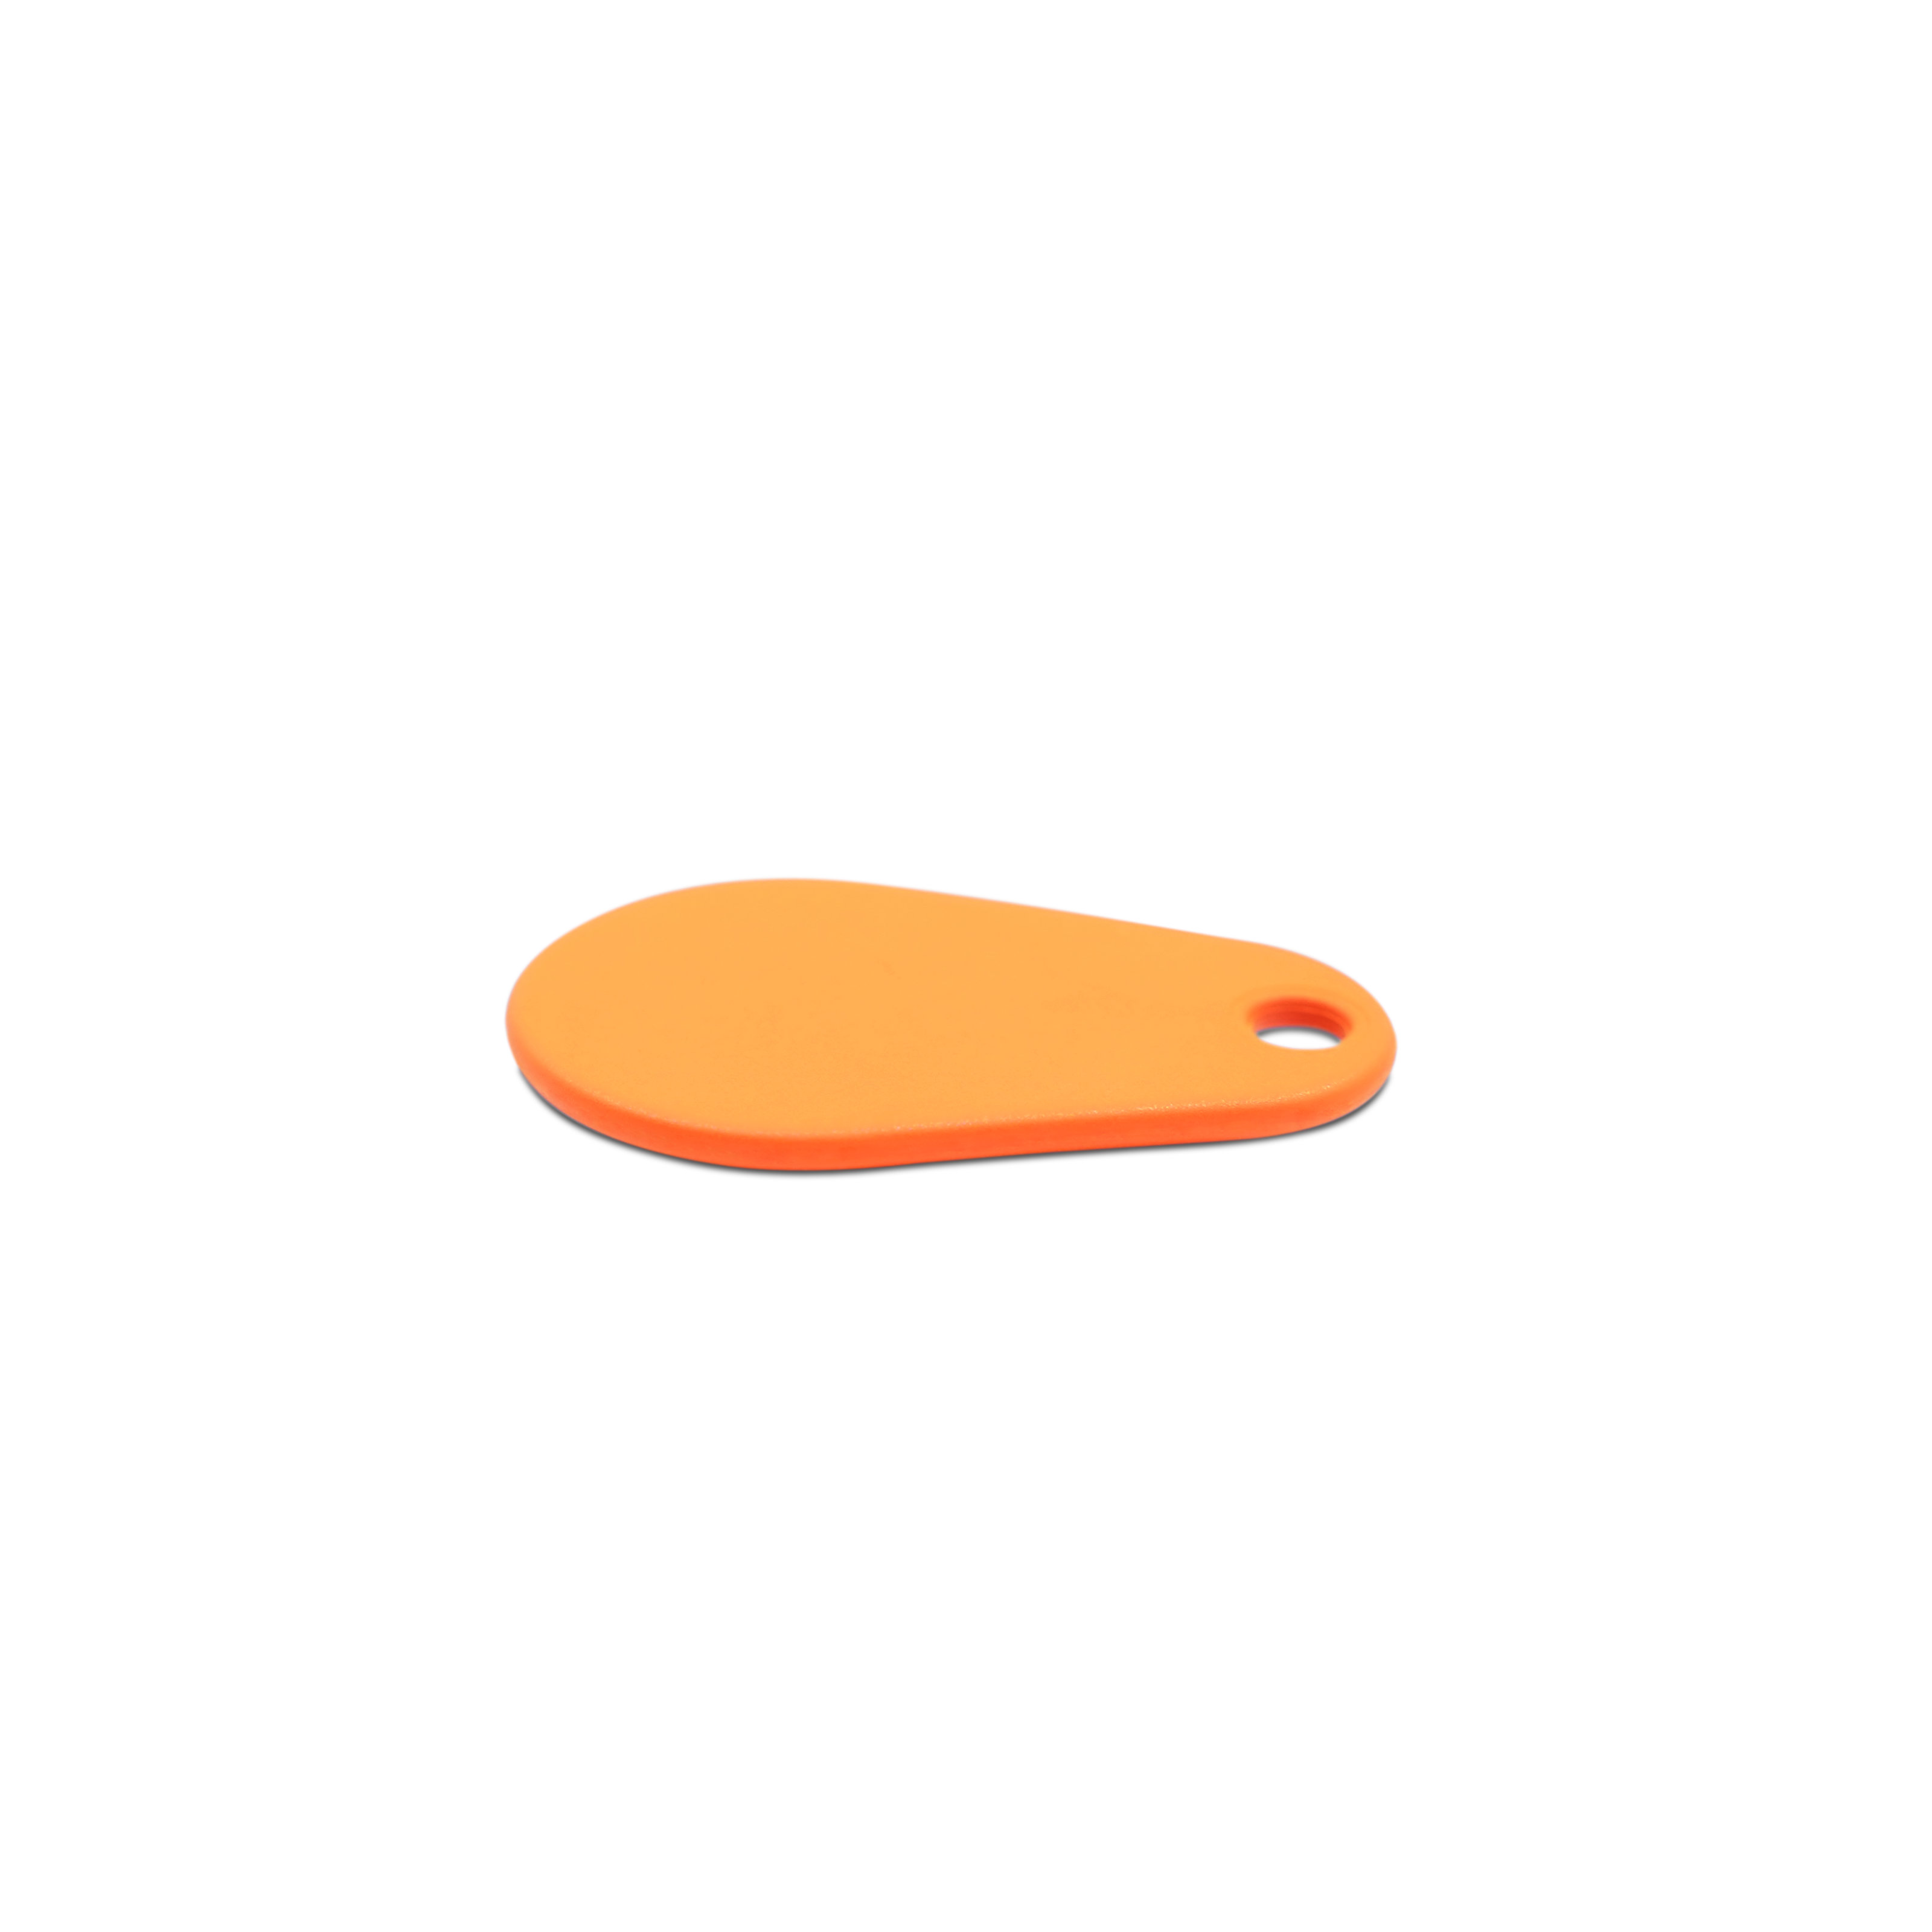 Liegender NFC Schlüsselanhänger in orange aus Polyamid